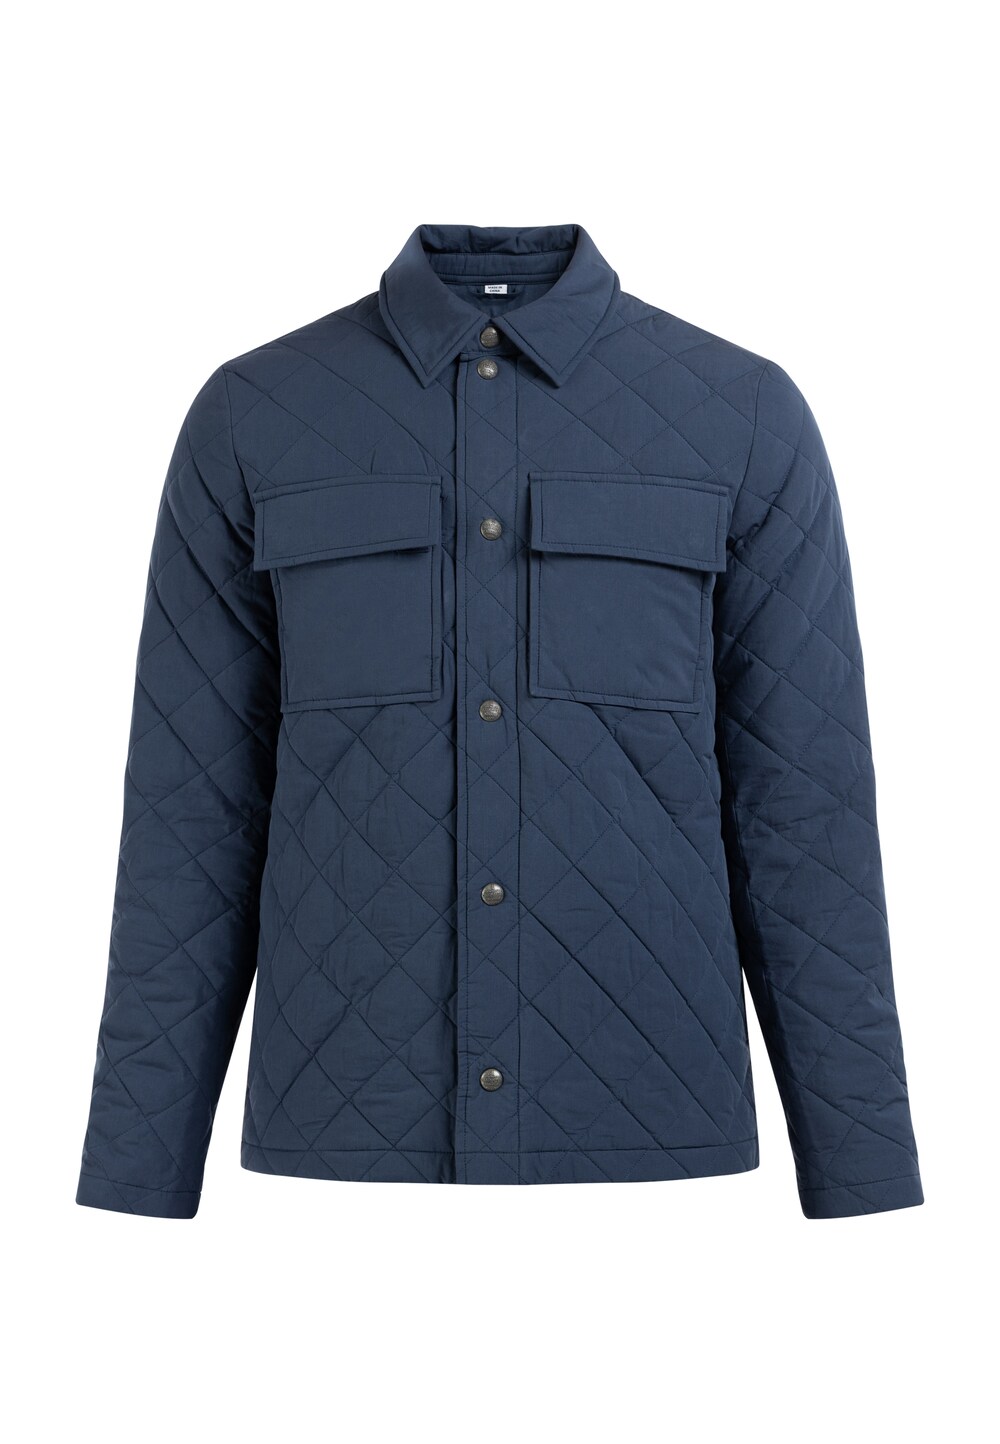 Межсезонная куртка DreiMaster Vintage, ультрамарин синий межсезонная куртка dreimaster vintage ржаво красный